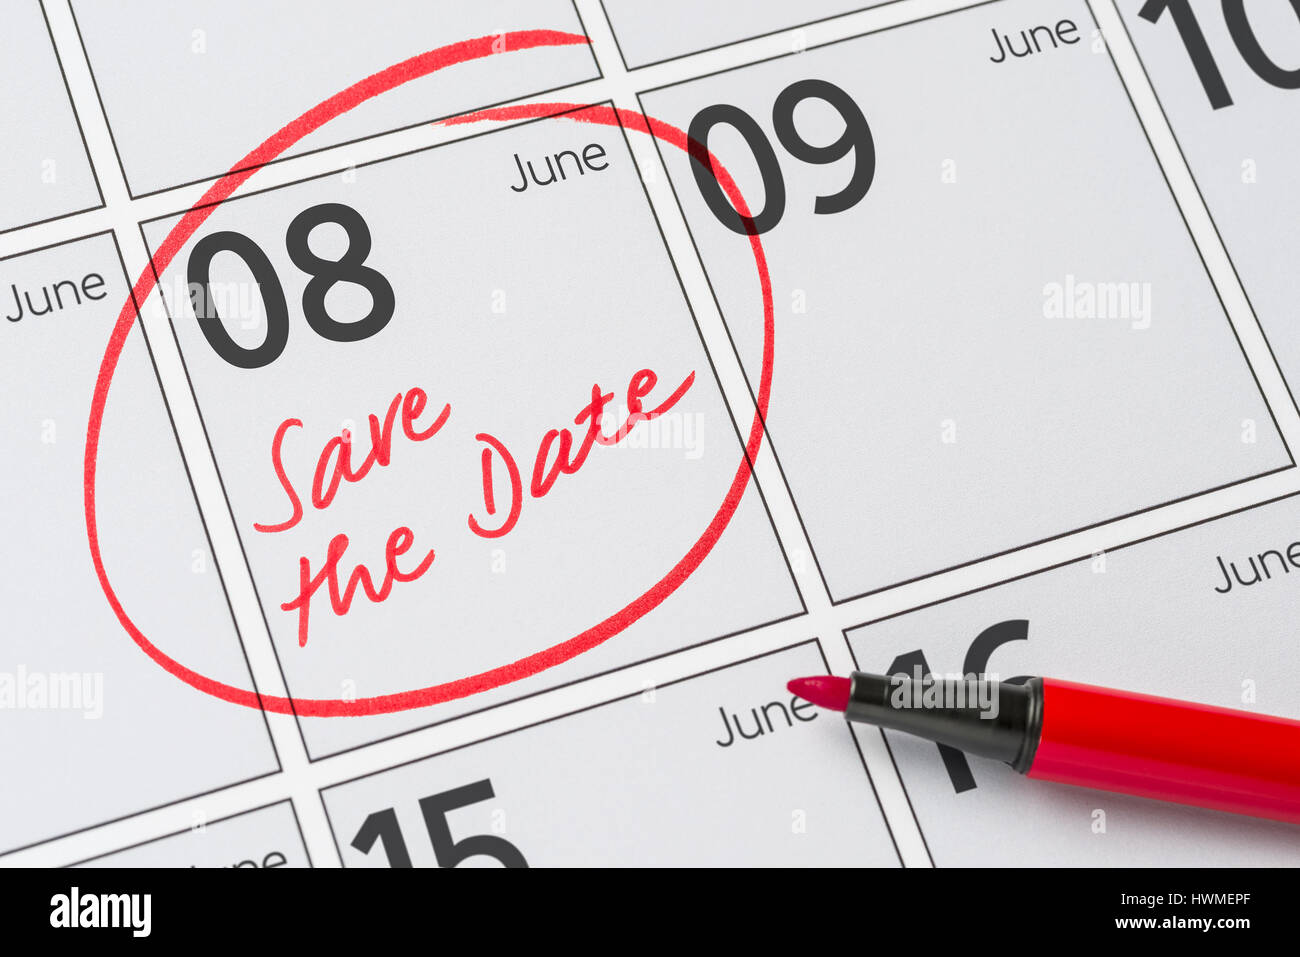 Enregistrer la date inscrite sur un calendrier - juin 08 Banque D'Images